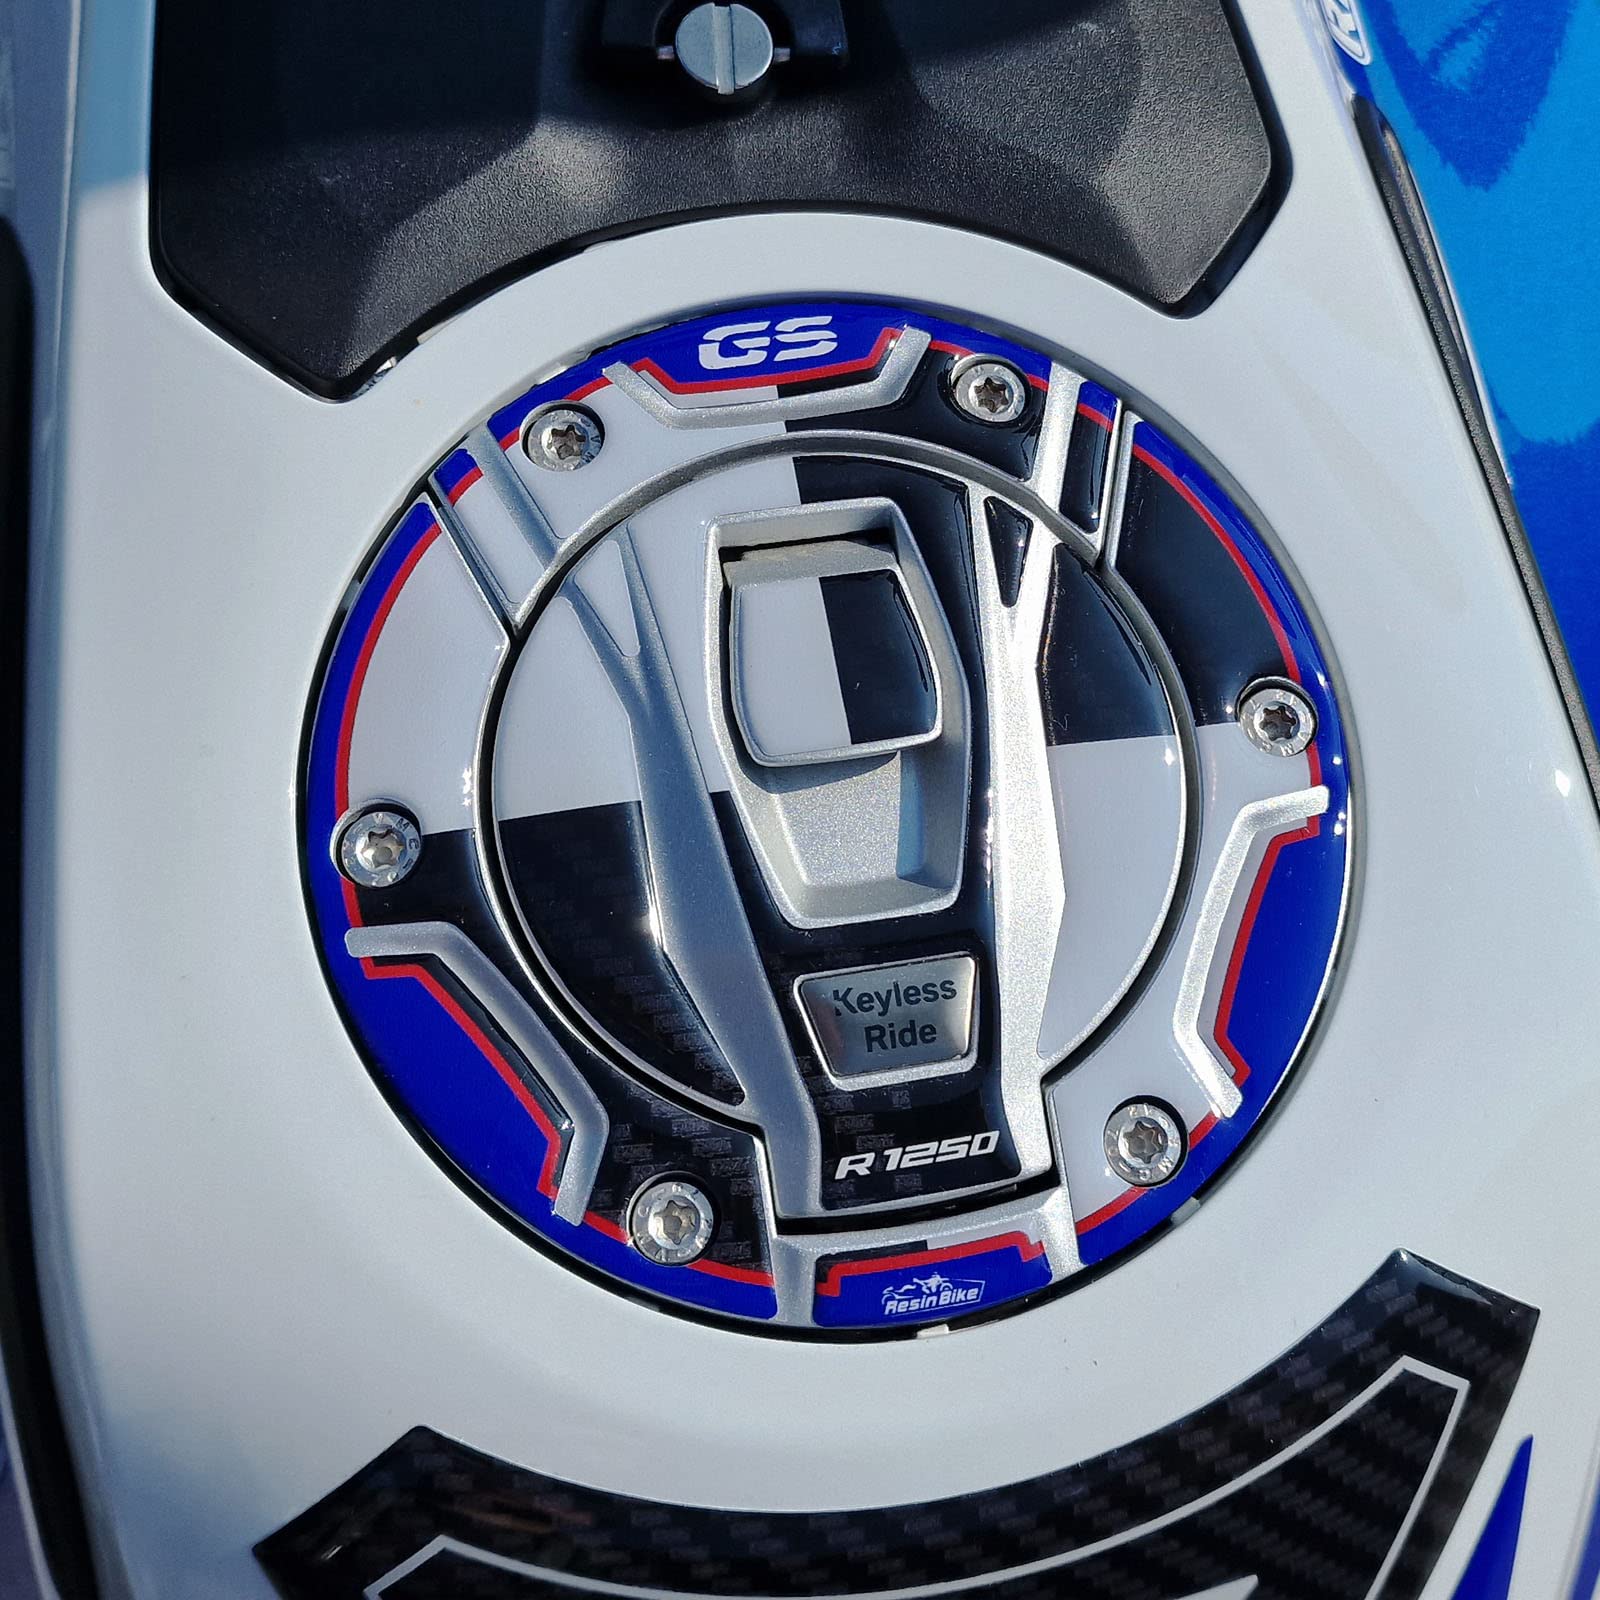 Resin Bike Aufkleber für Motorrad Kompatibel mit BMW R 1250 GS Adventure Rallye 2022. Tankdeckelschutz vor Stößen und Kratzern. 3D-Harzklebstoff - Stickers - Made in Italy von Resin Bike